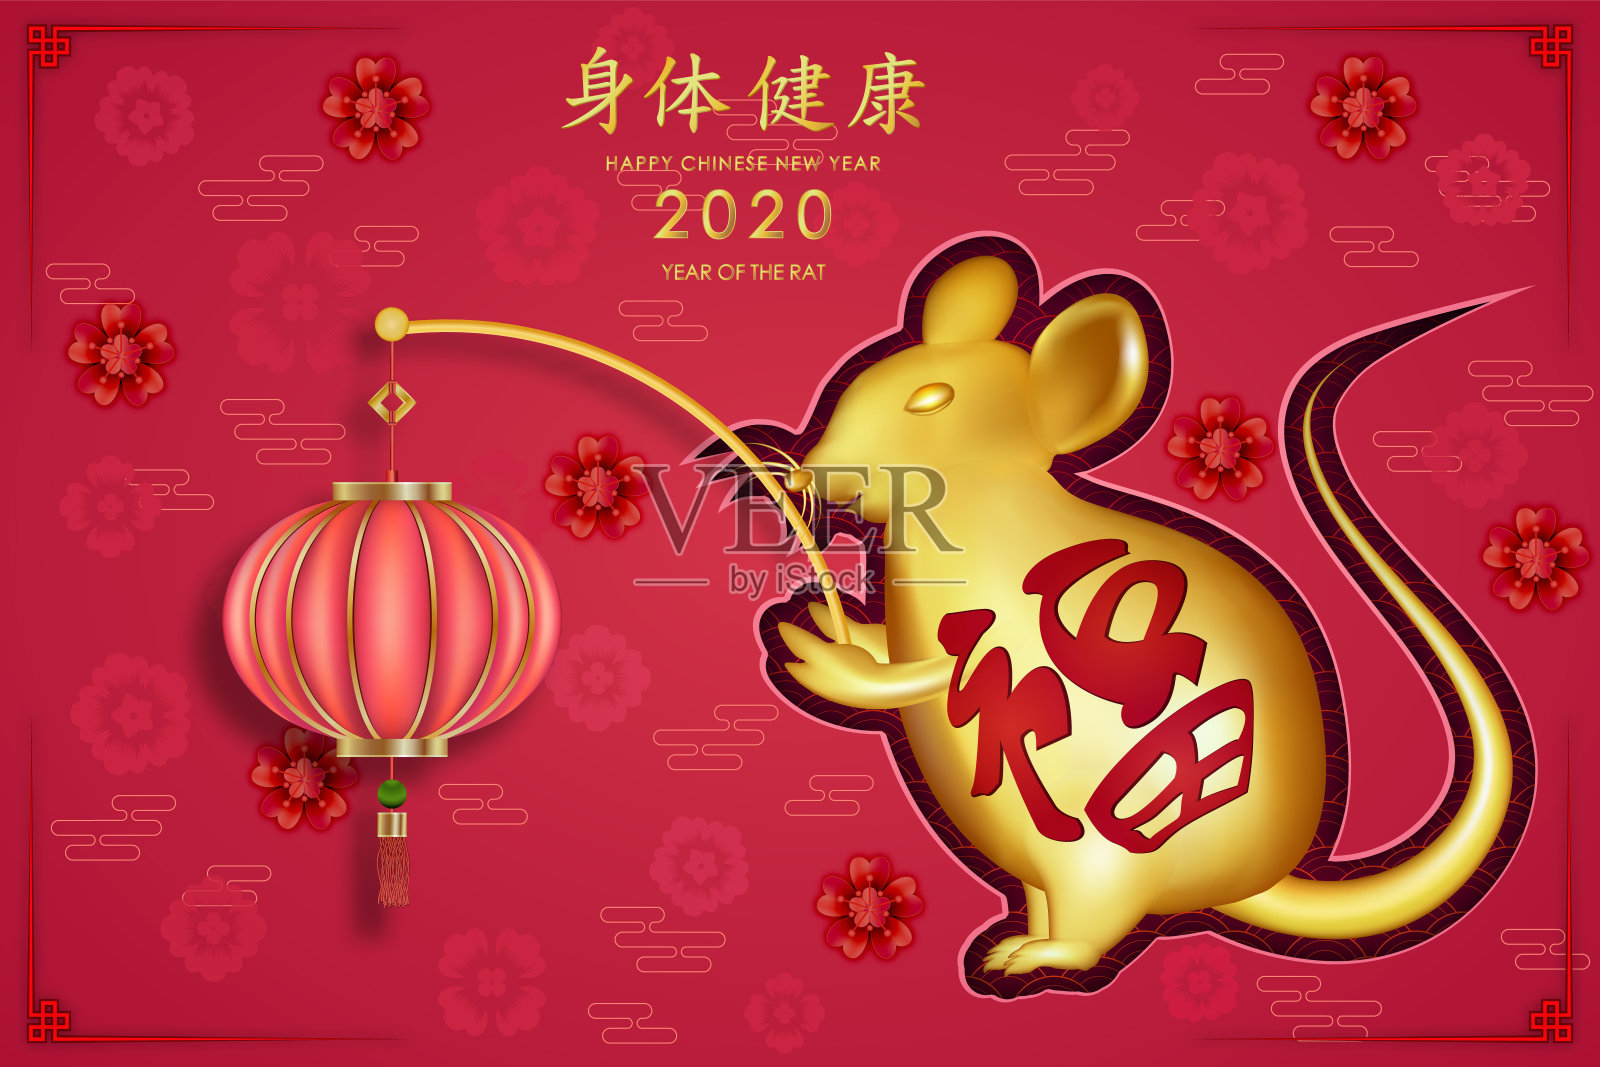 2020年鼠年春节快乐。金鼠祝你度过一个金色的春节。(中文字母表示新年快乐)设计模板素材